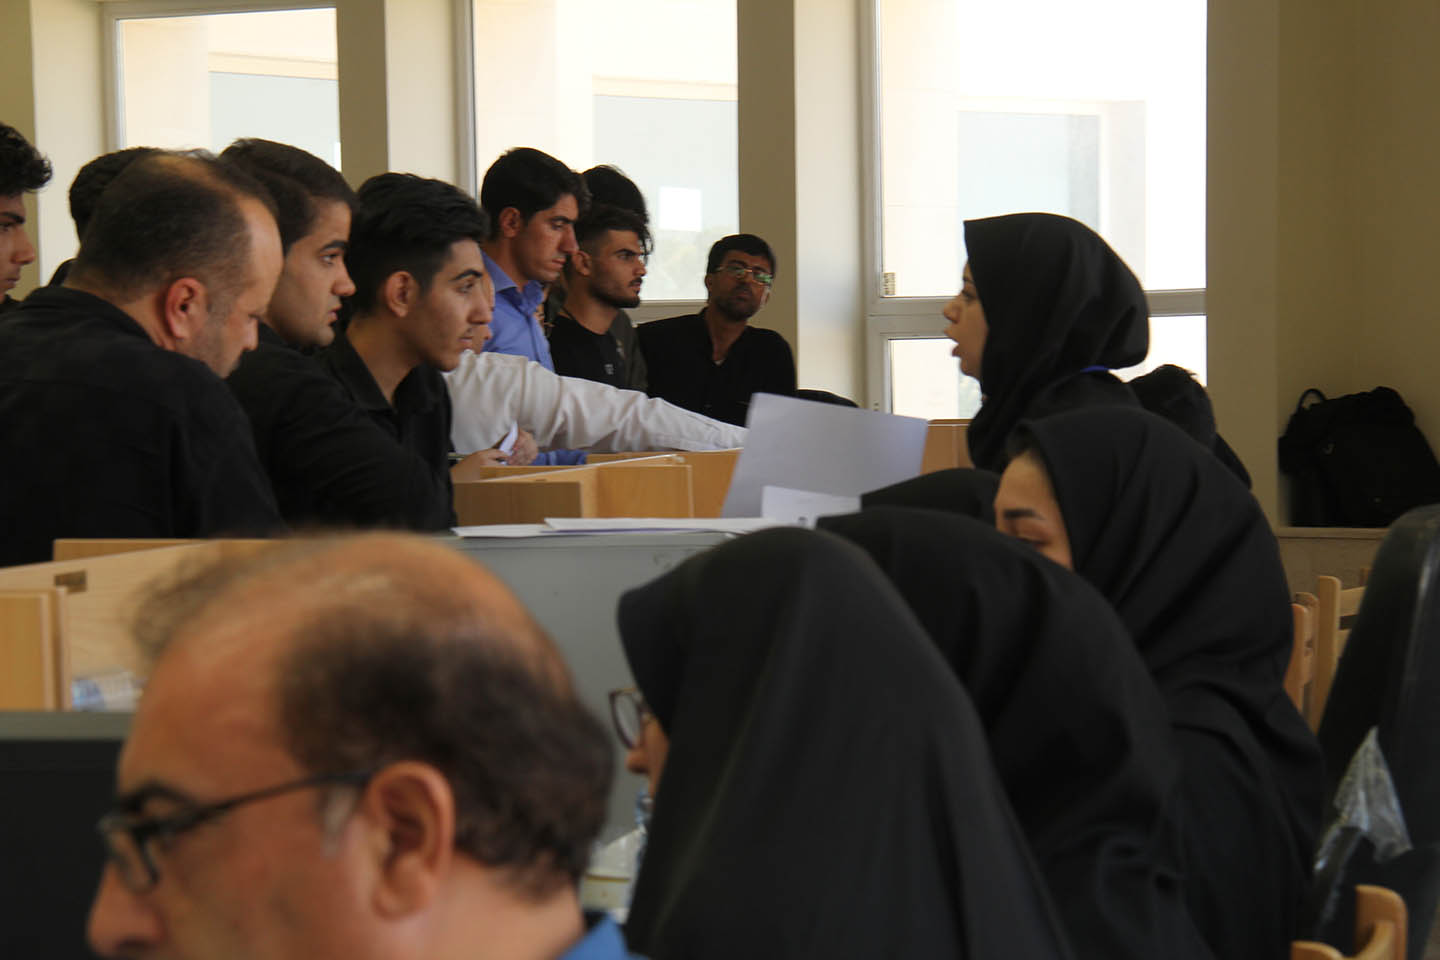 گزارش تصويري ثبت نام دانشجويان ورودي جديد کارشناسي دانشگاه